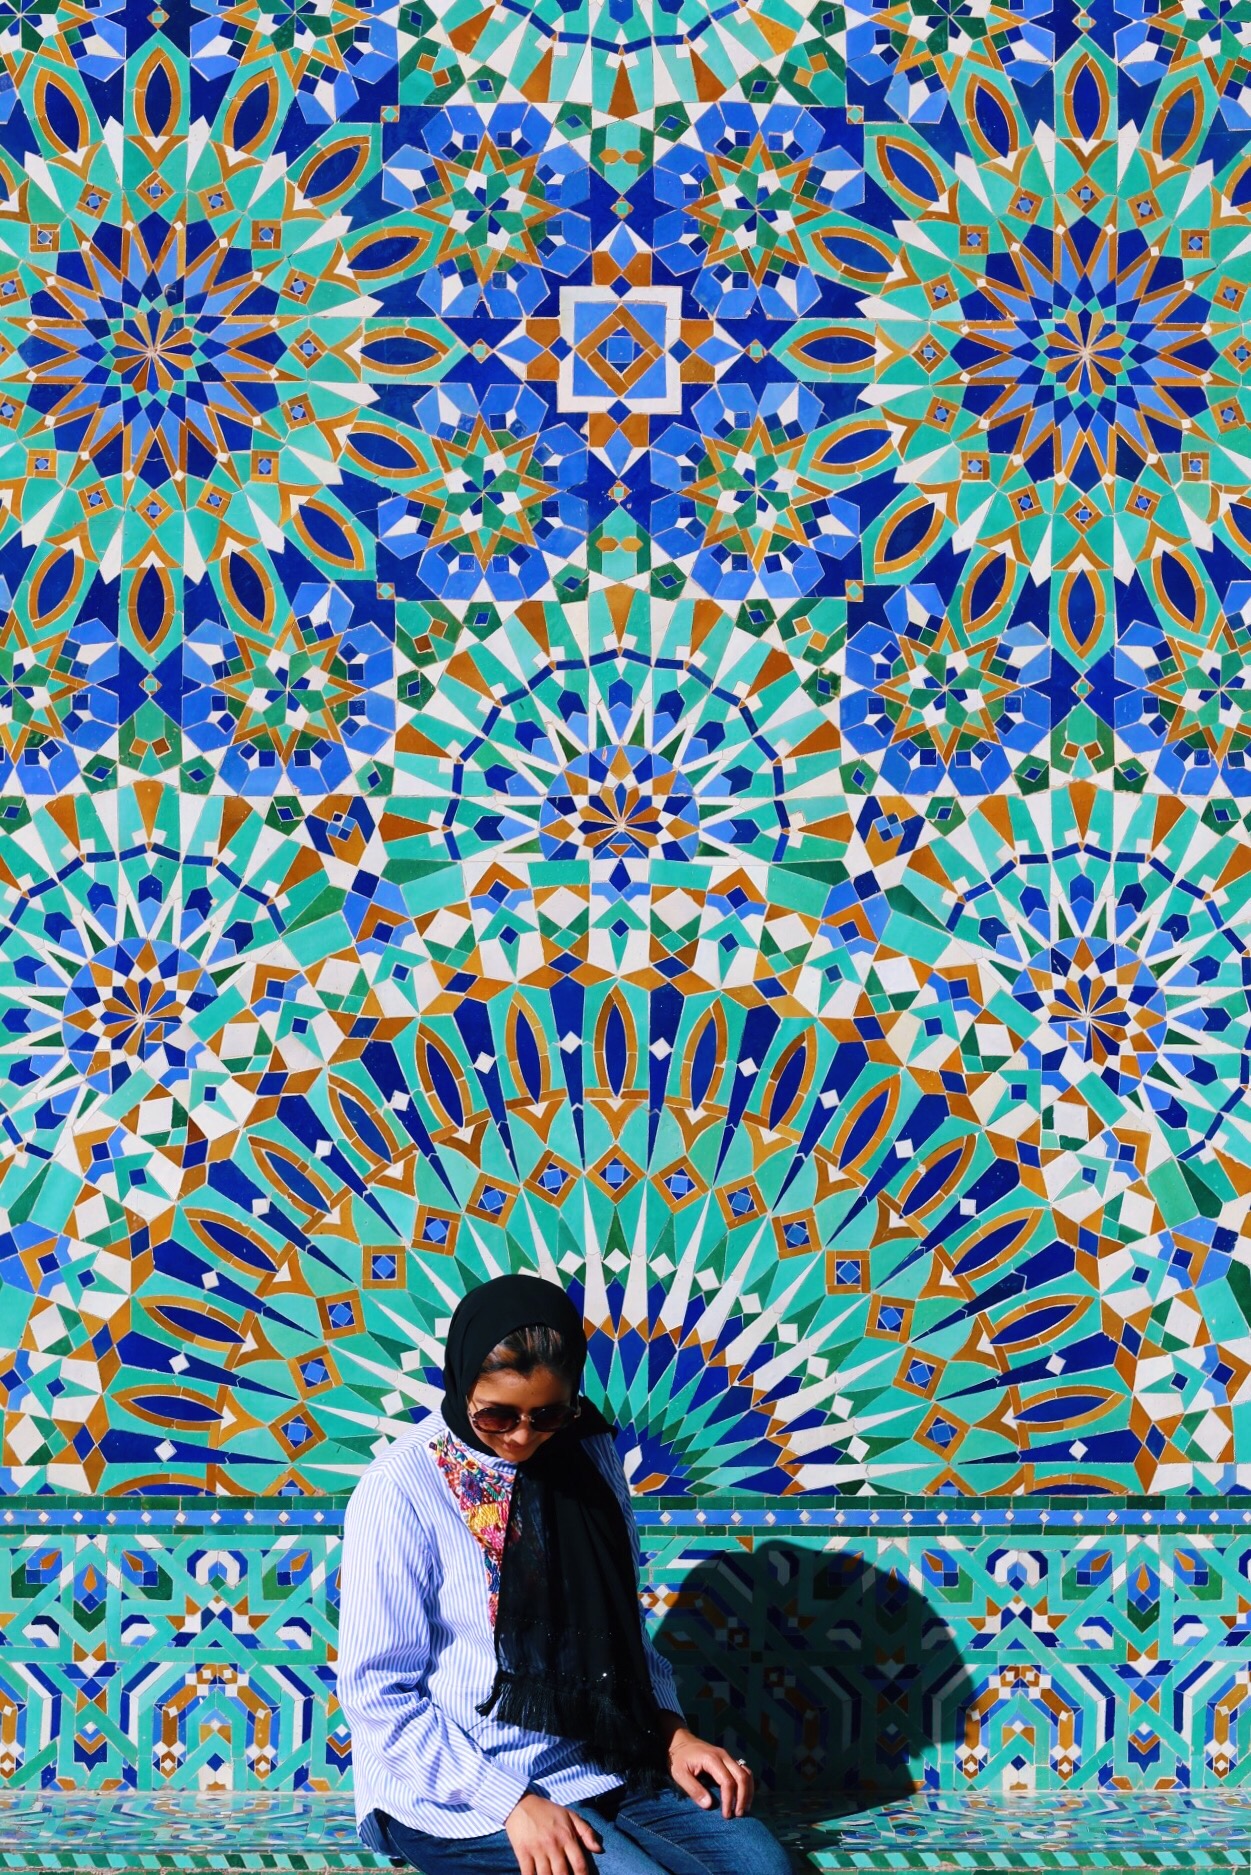 Morocco Hassan II Mosque Mosaic Tiles